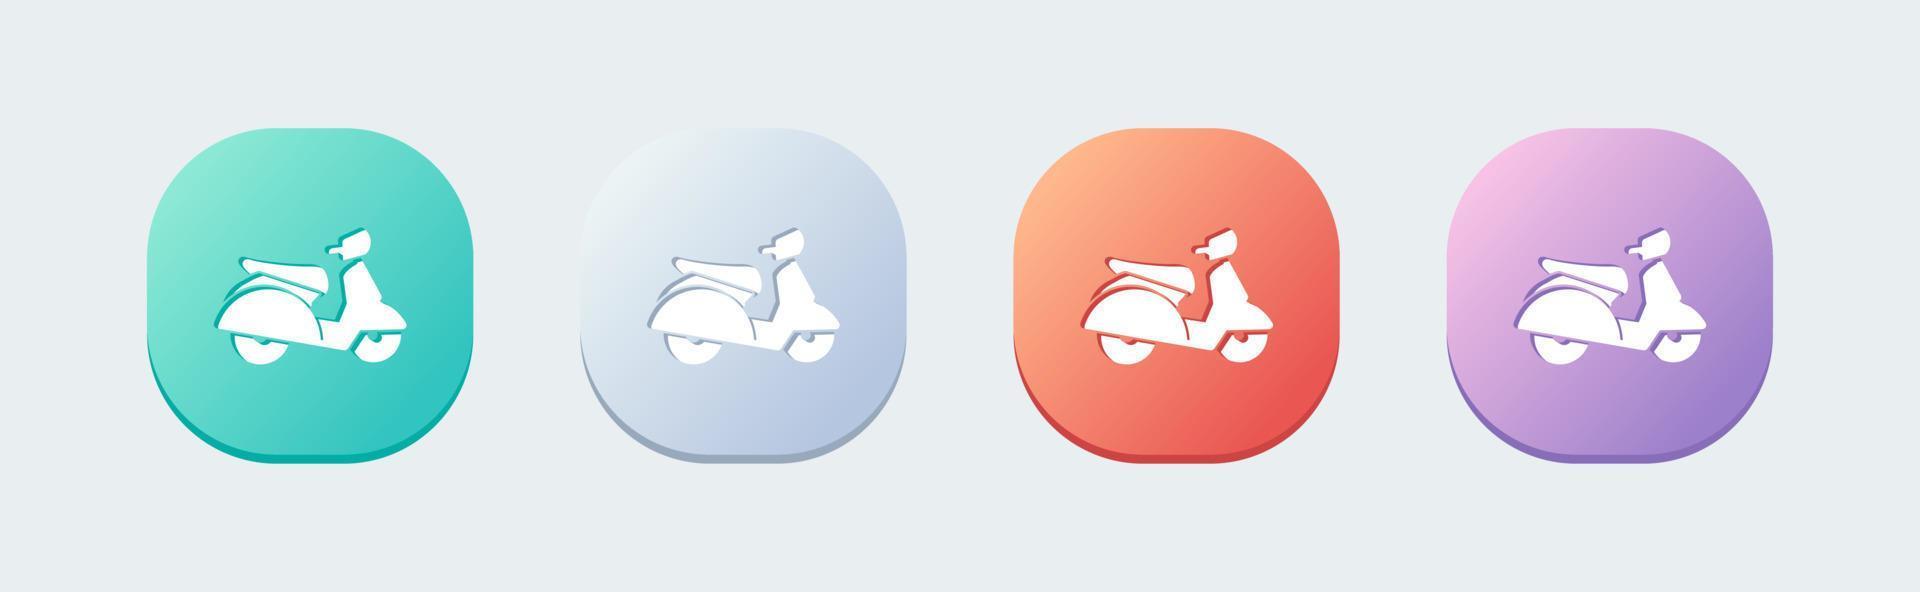 skoter solid ikon i platt designstil. motorcykel tecken vektor illustration.